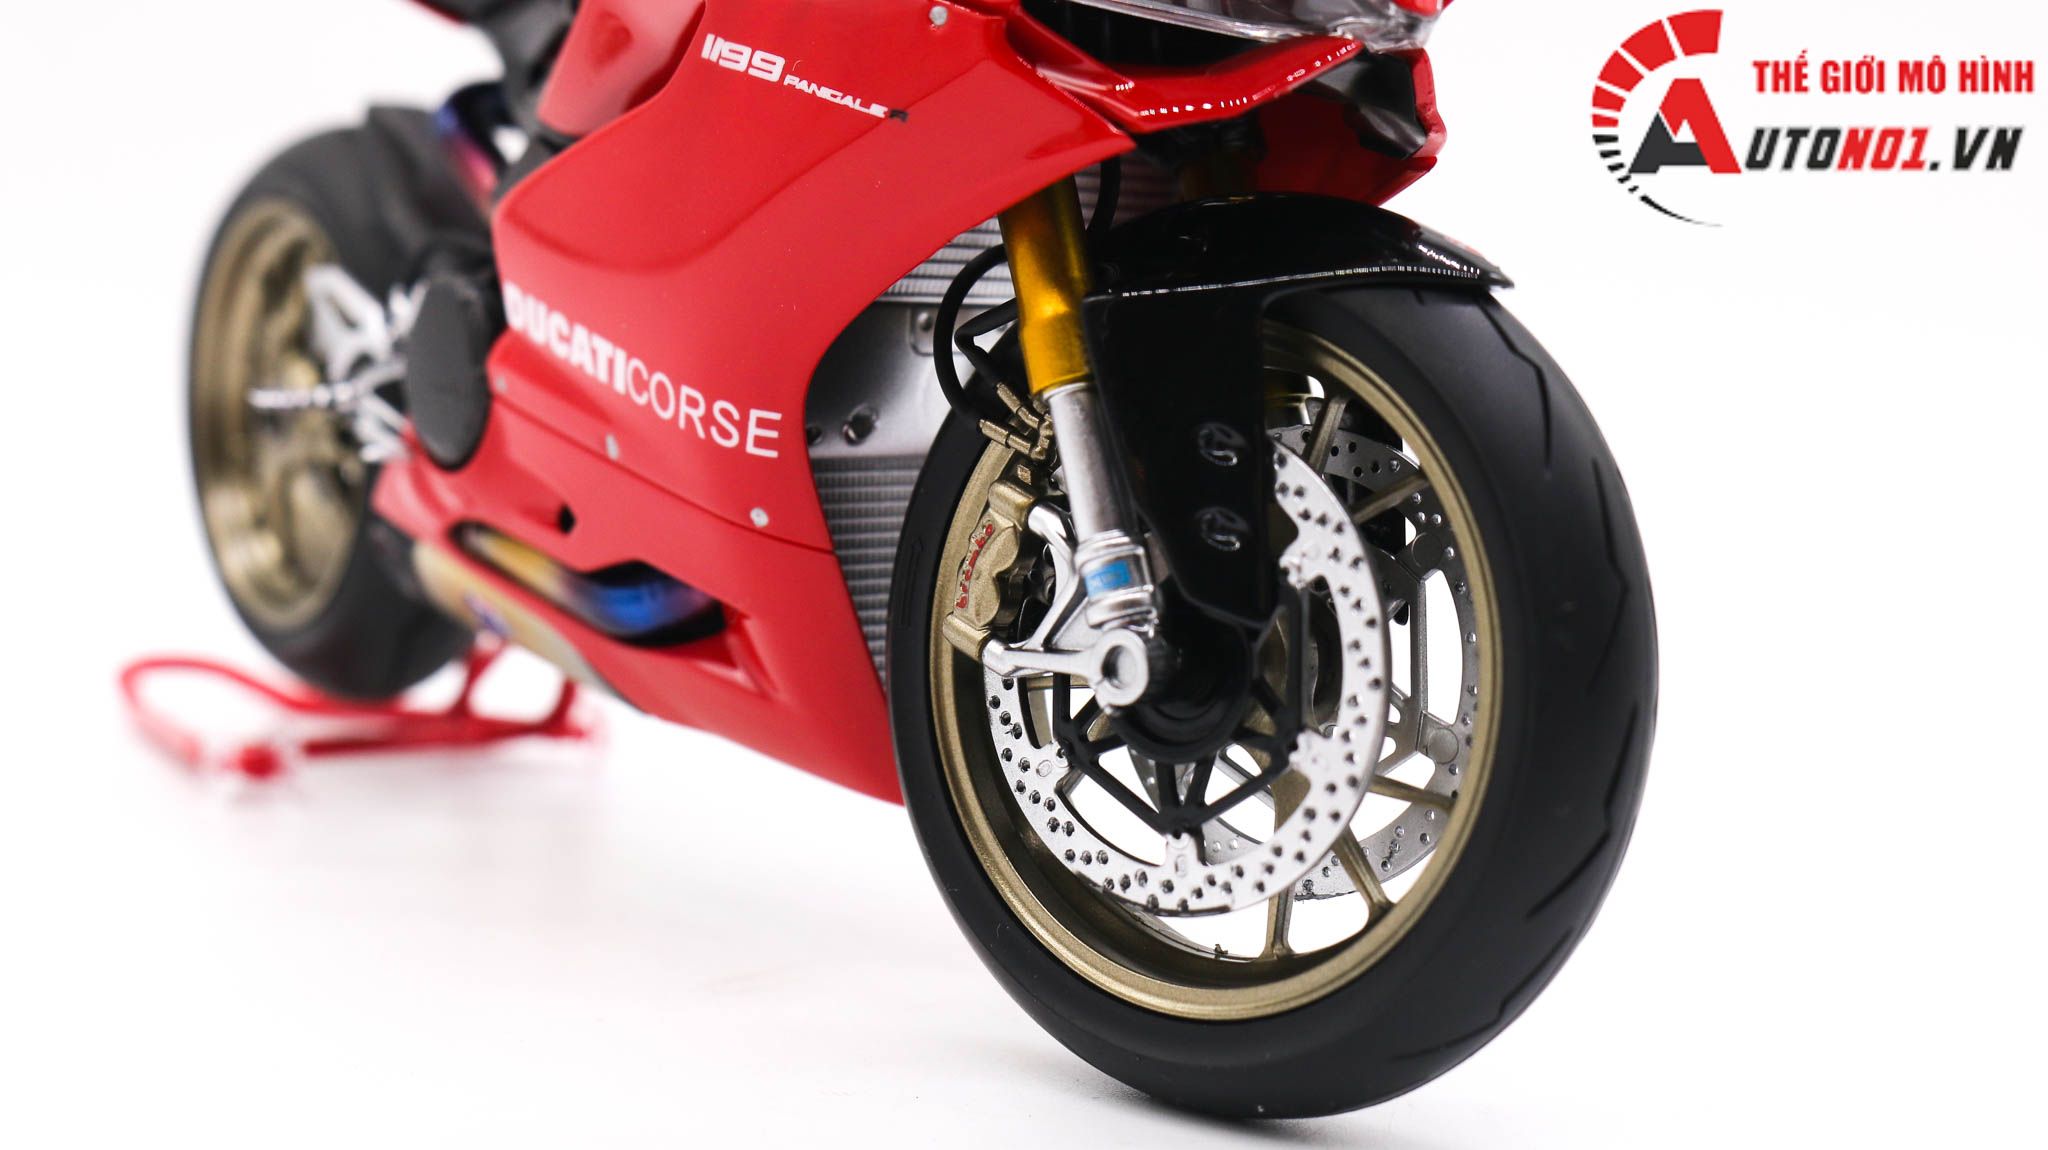  Mô hình xe cao cấp Ducati 1199 Corse Panigale Nồi Carbon Red 1:12 Tamiya D203 